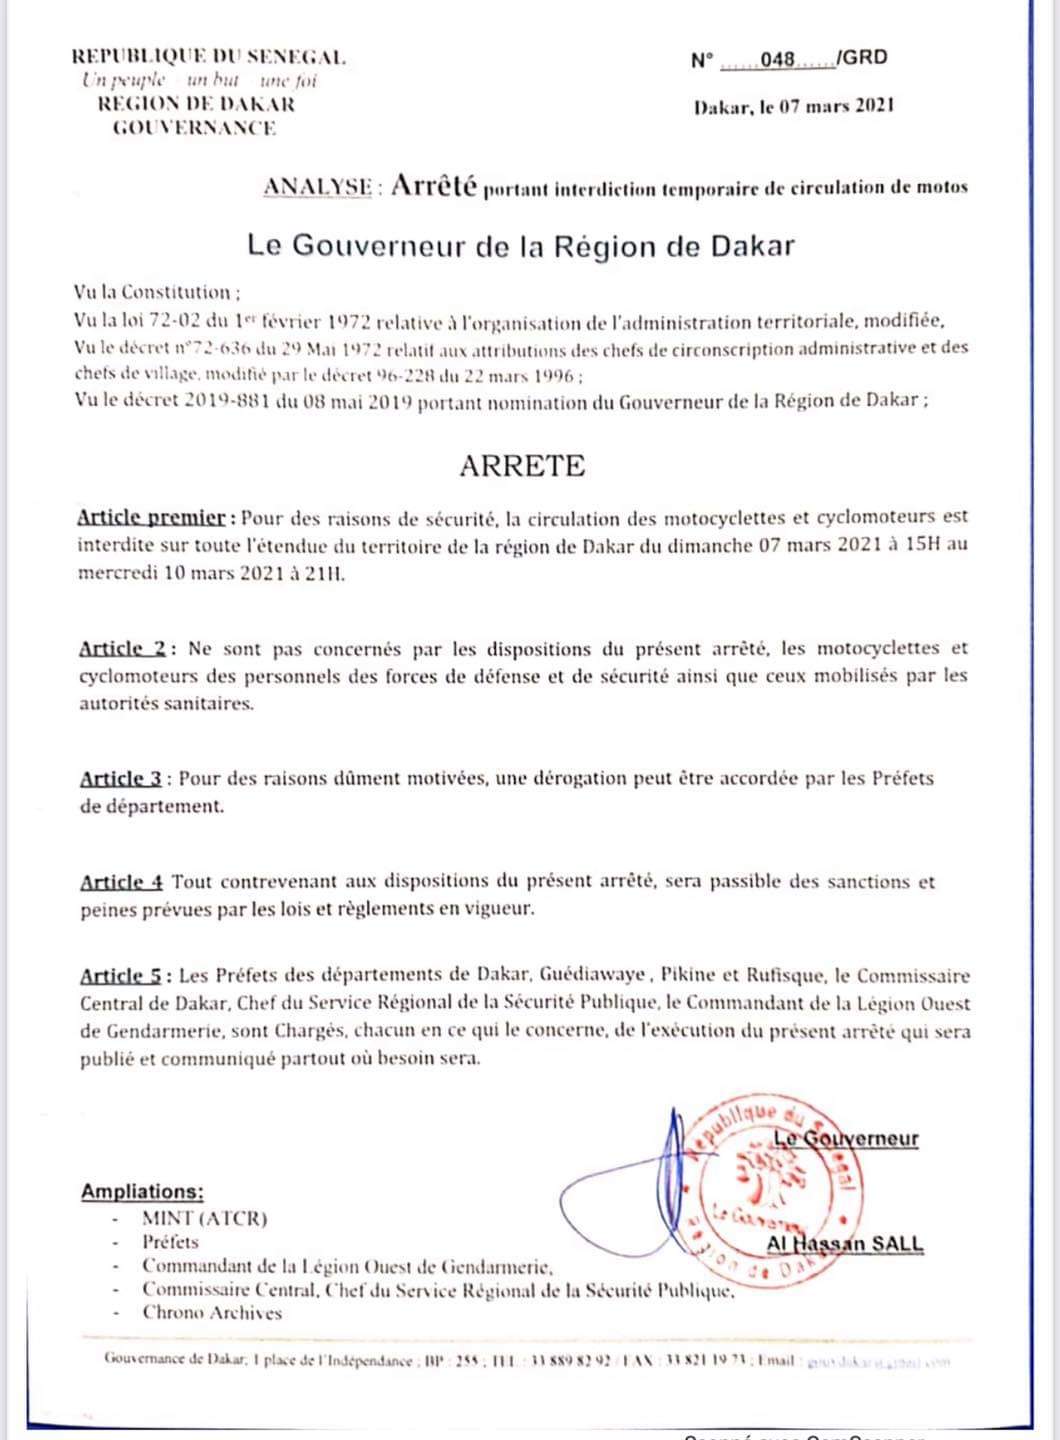 Le gouverneur de Dakar interdit la circulation des deux roues jusqu’au 10 mars